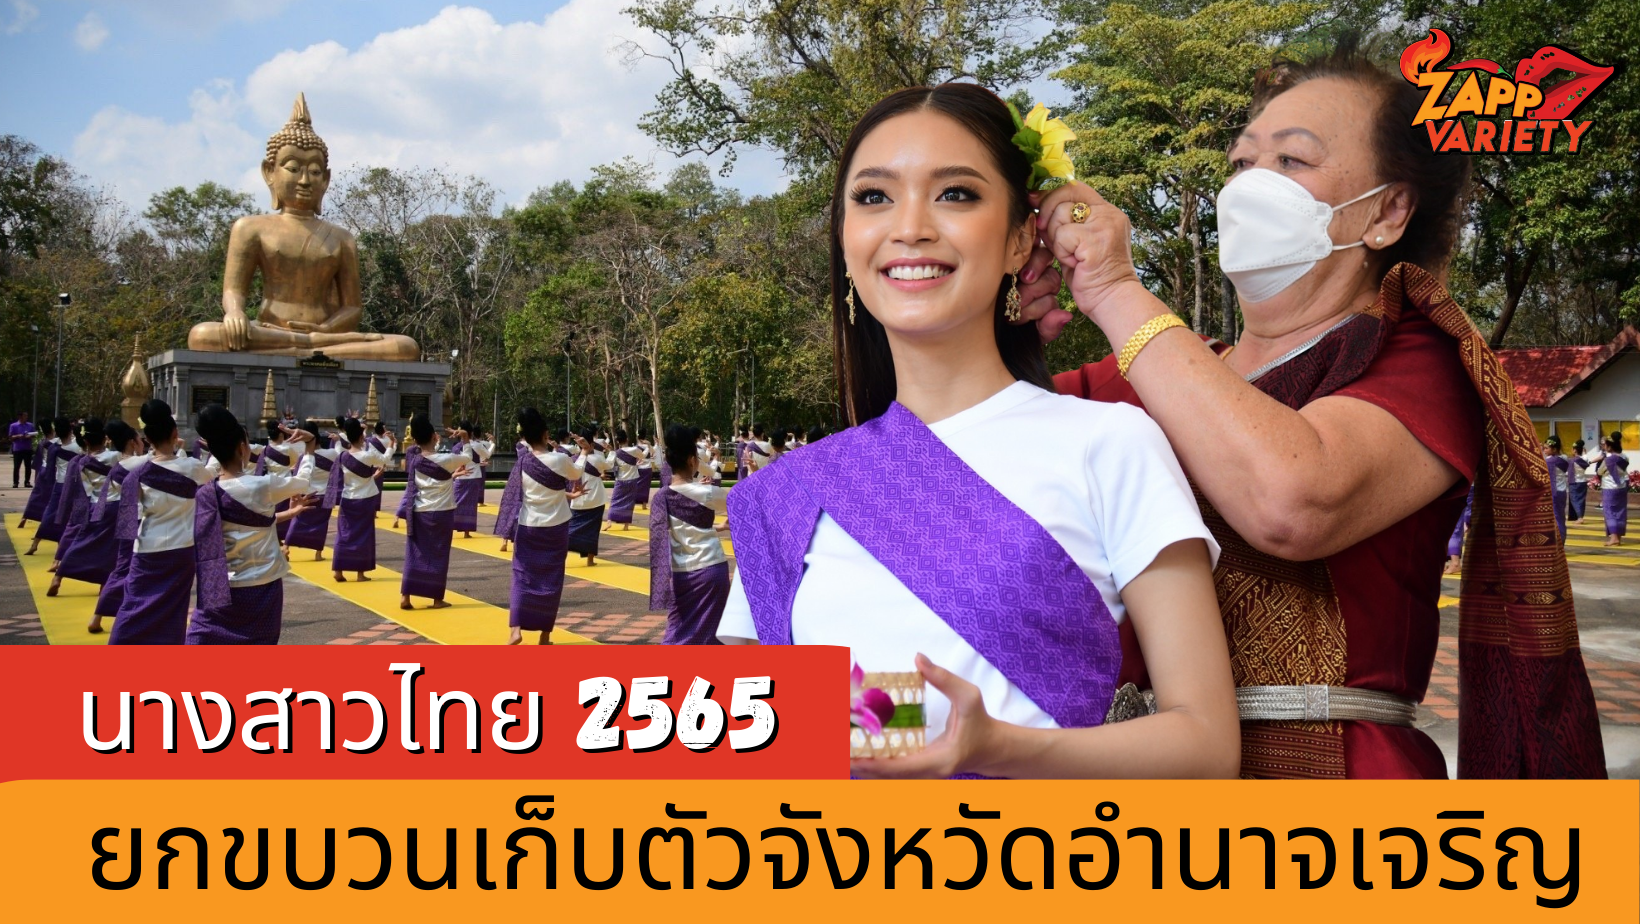 ยกขบวนสาวงาม #นางสาวไทย2565 เก็บตัวที่ จ.อำนาจเจริญ   